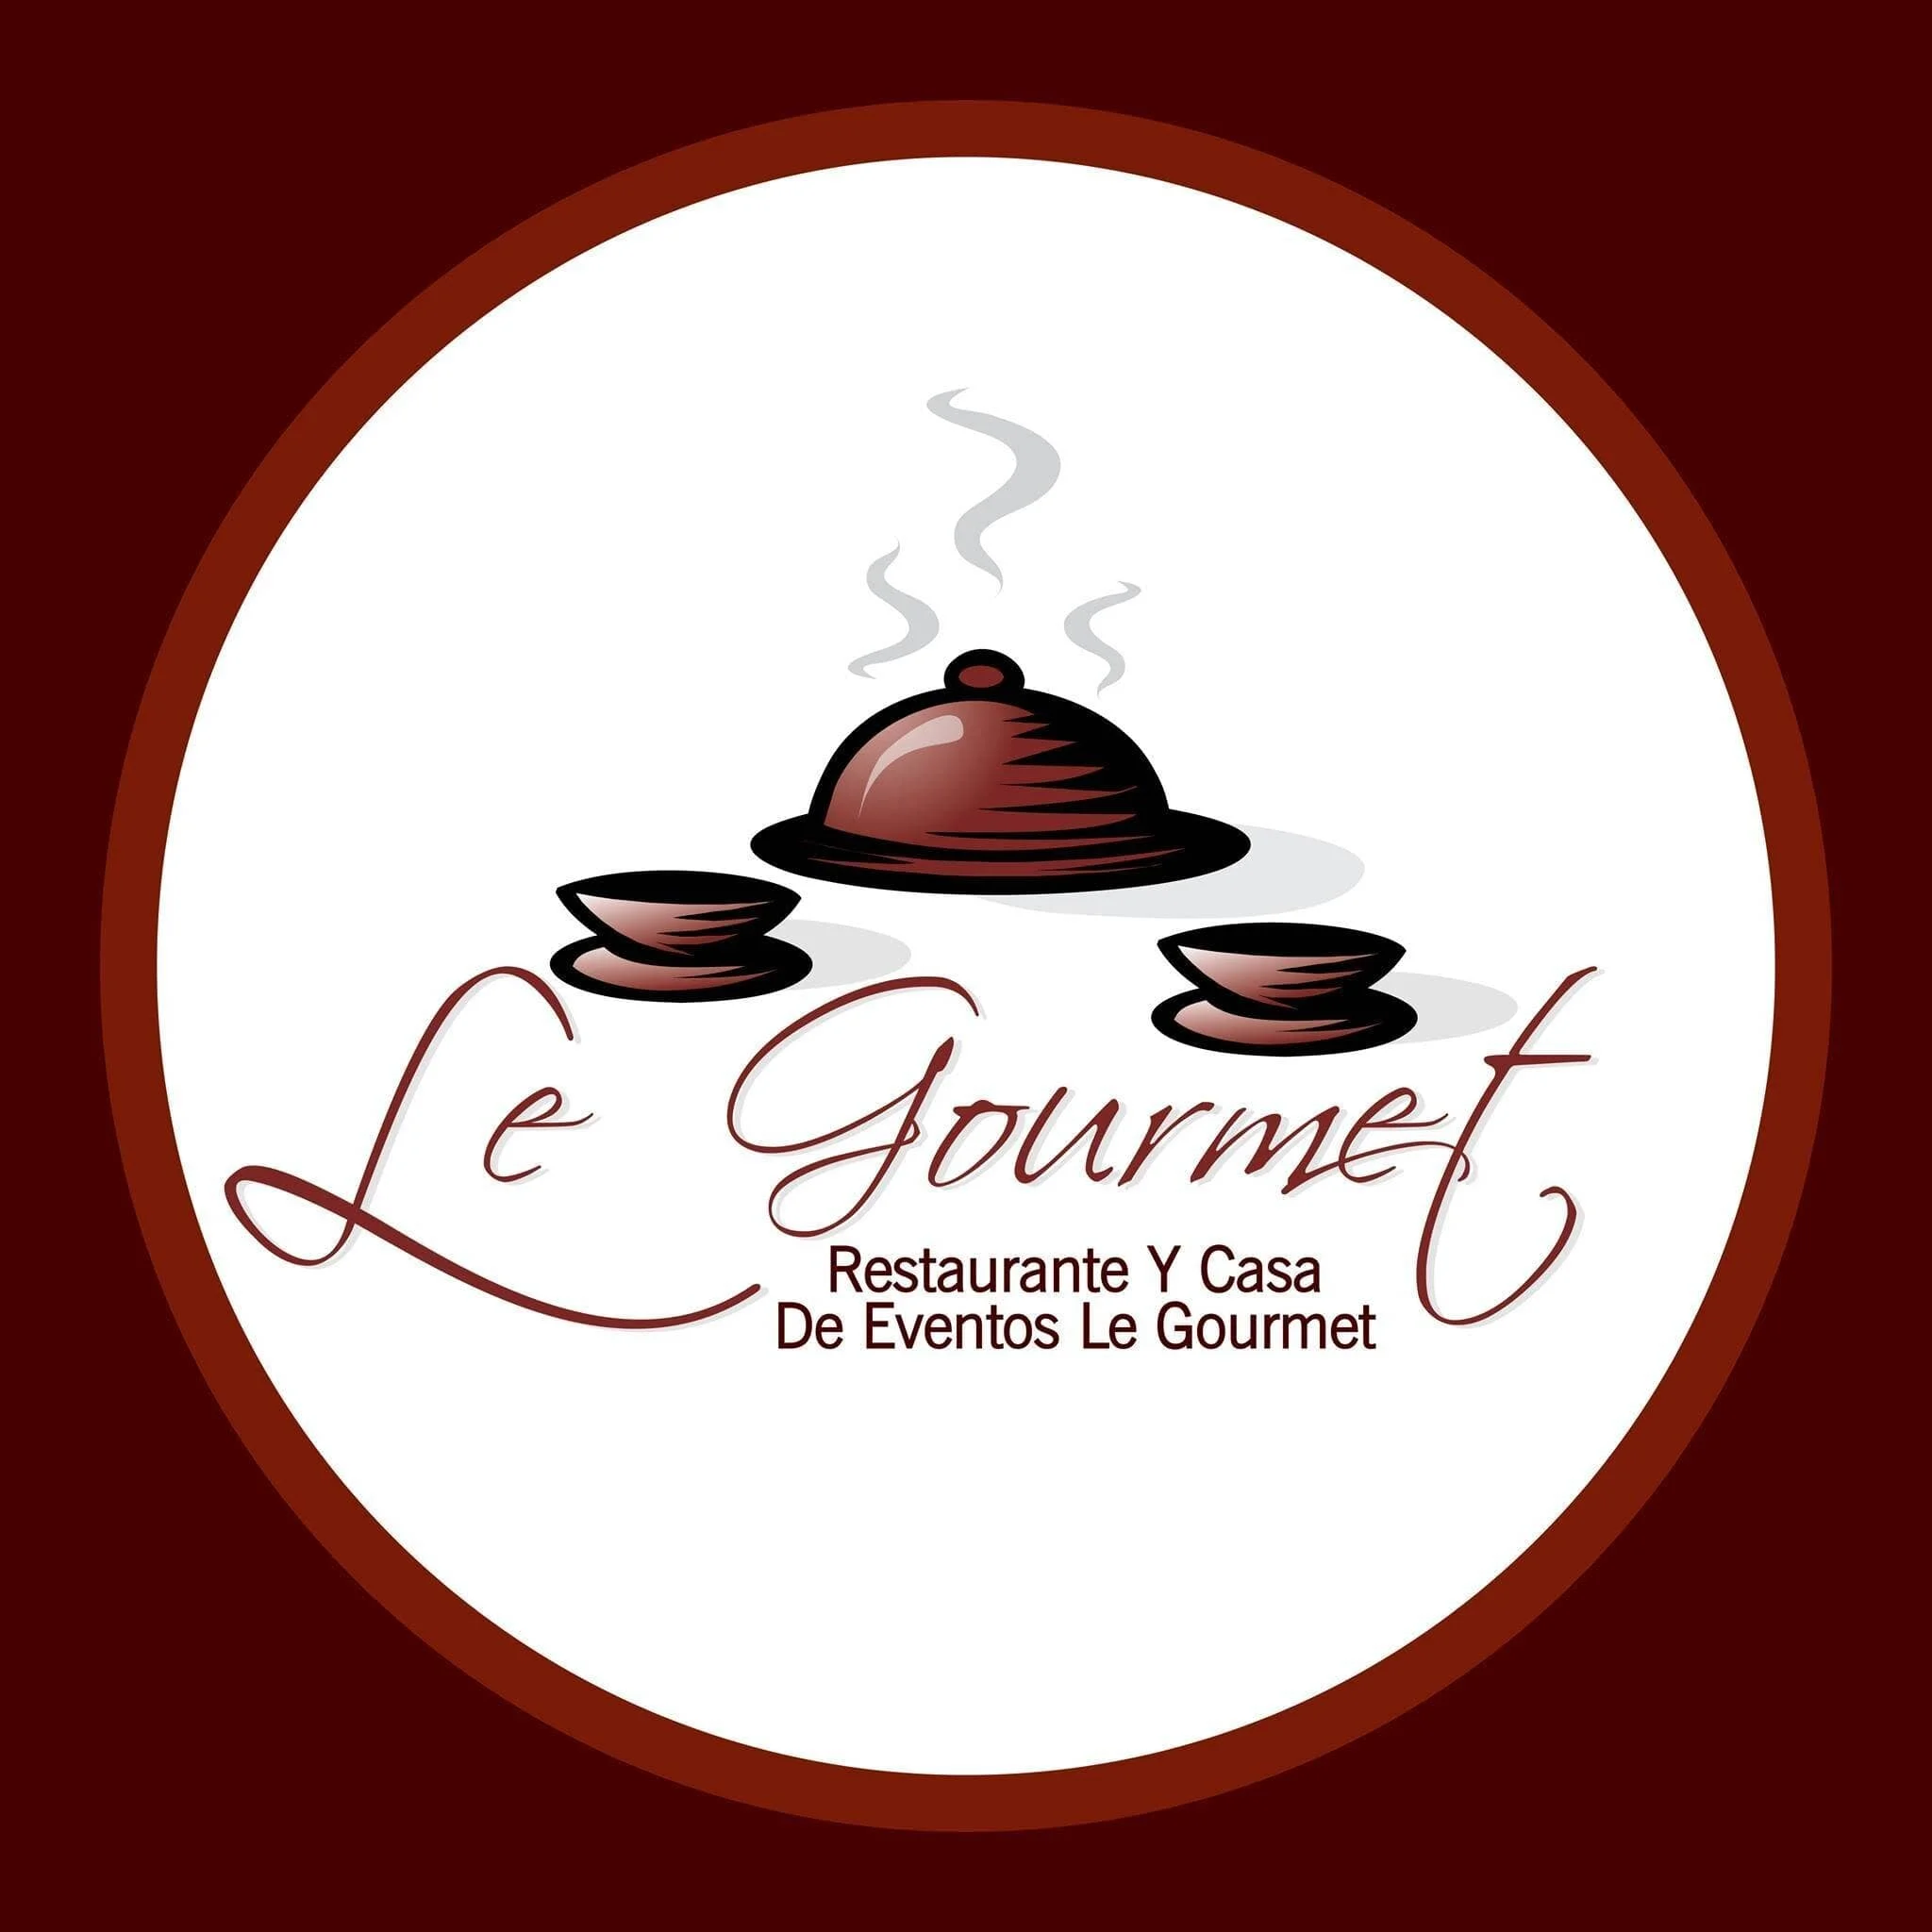 Restaurante-restaurante-y-casa-de-eventos-le-gourmet-22927